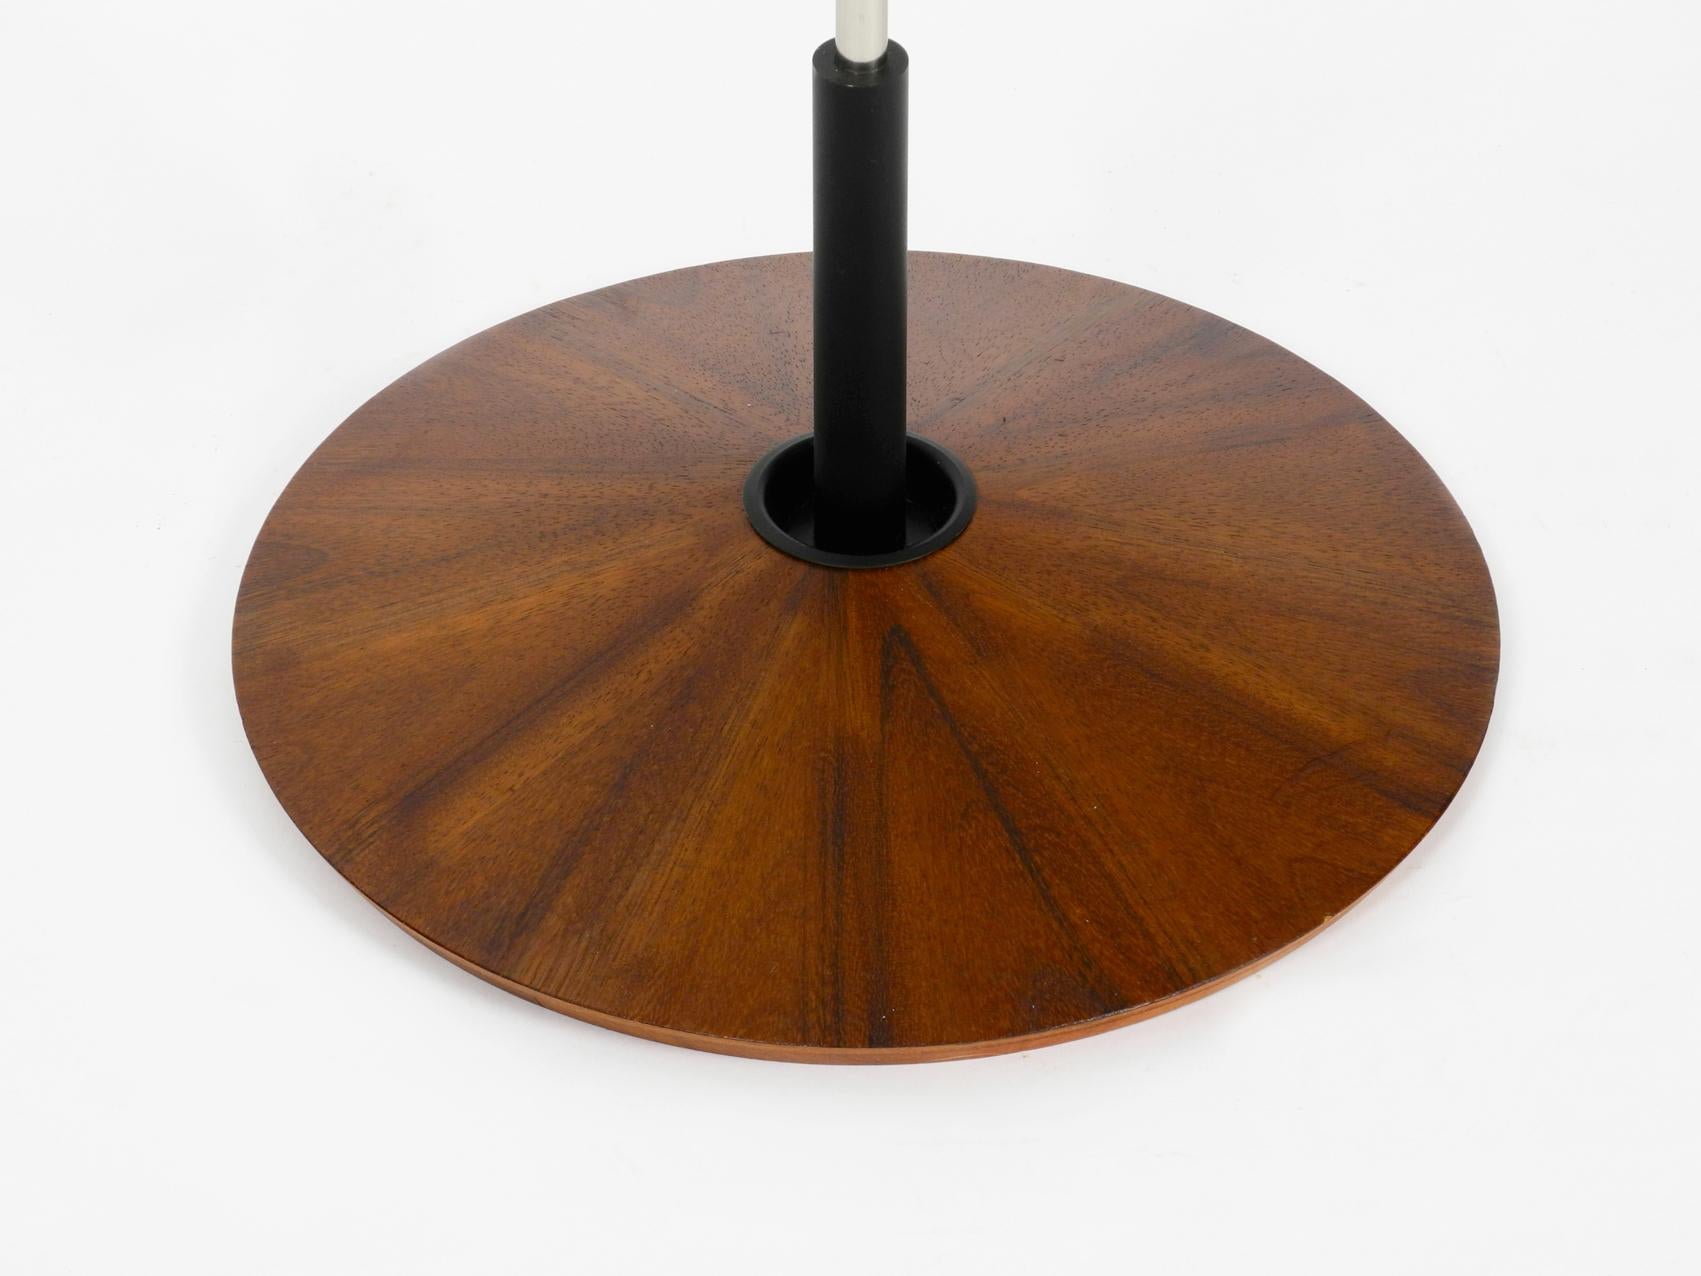 Mid-20th Century Mid-Century Modern Floor Lamp by George Frydman for Temde with Teak Veneer